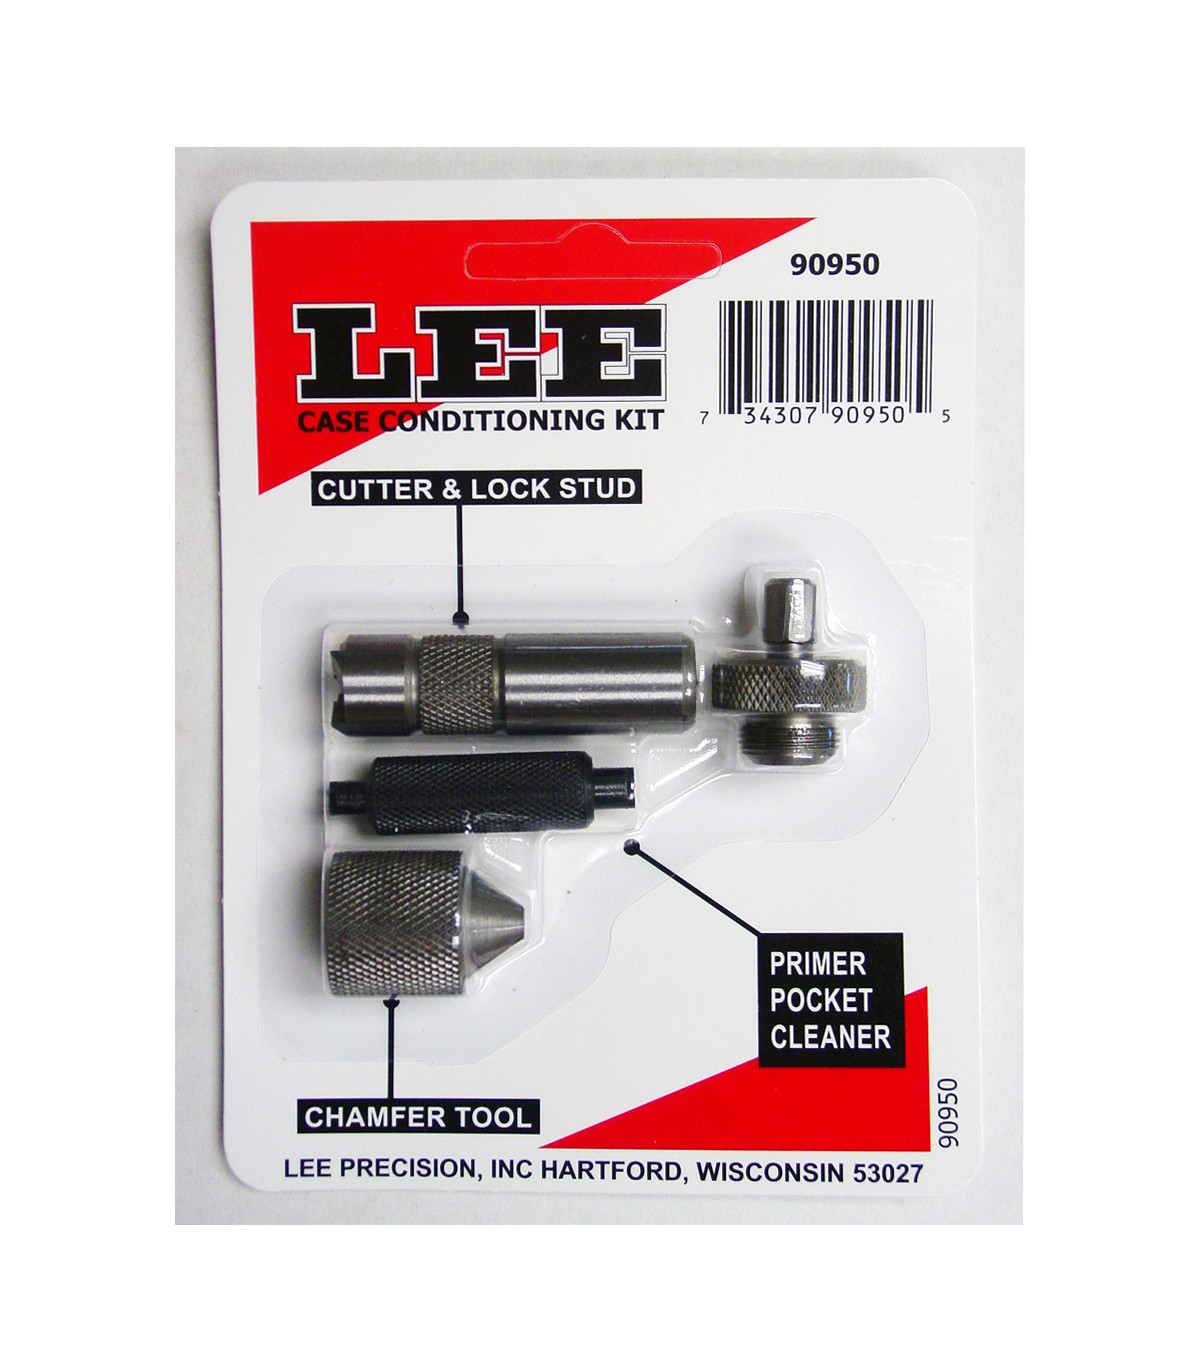 Kit complet de rechargement - Lee Classic Turret Press Kit 90304